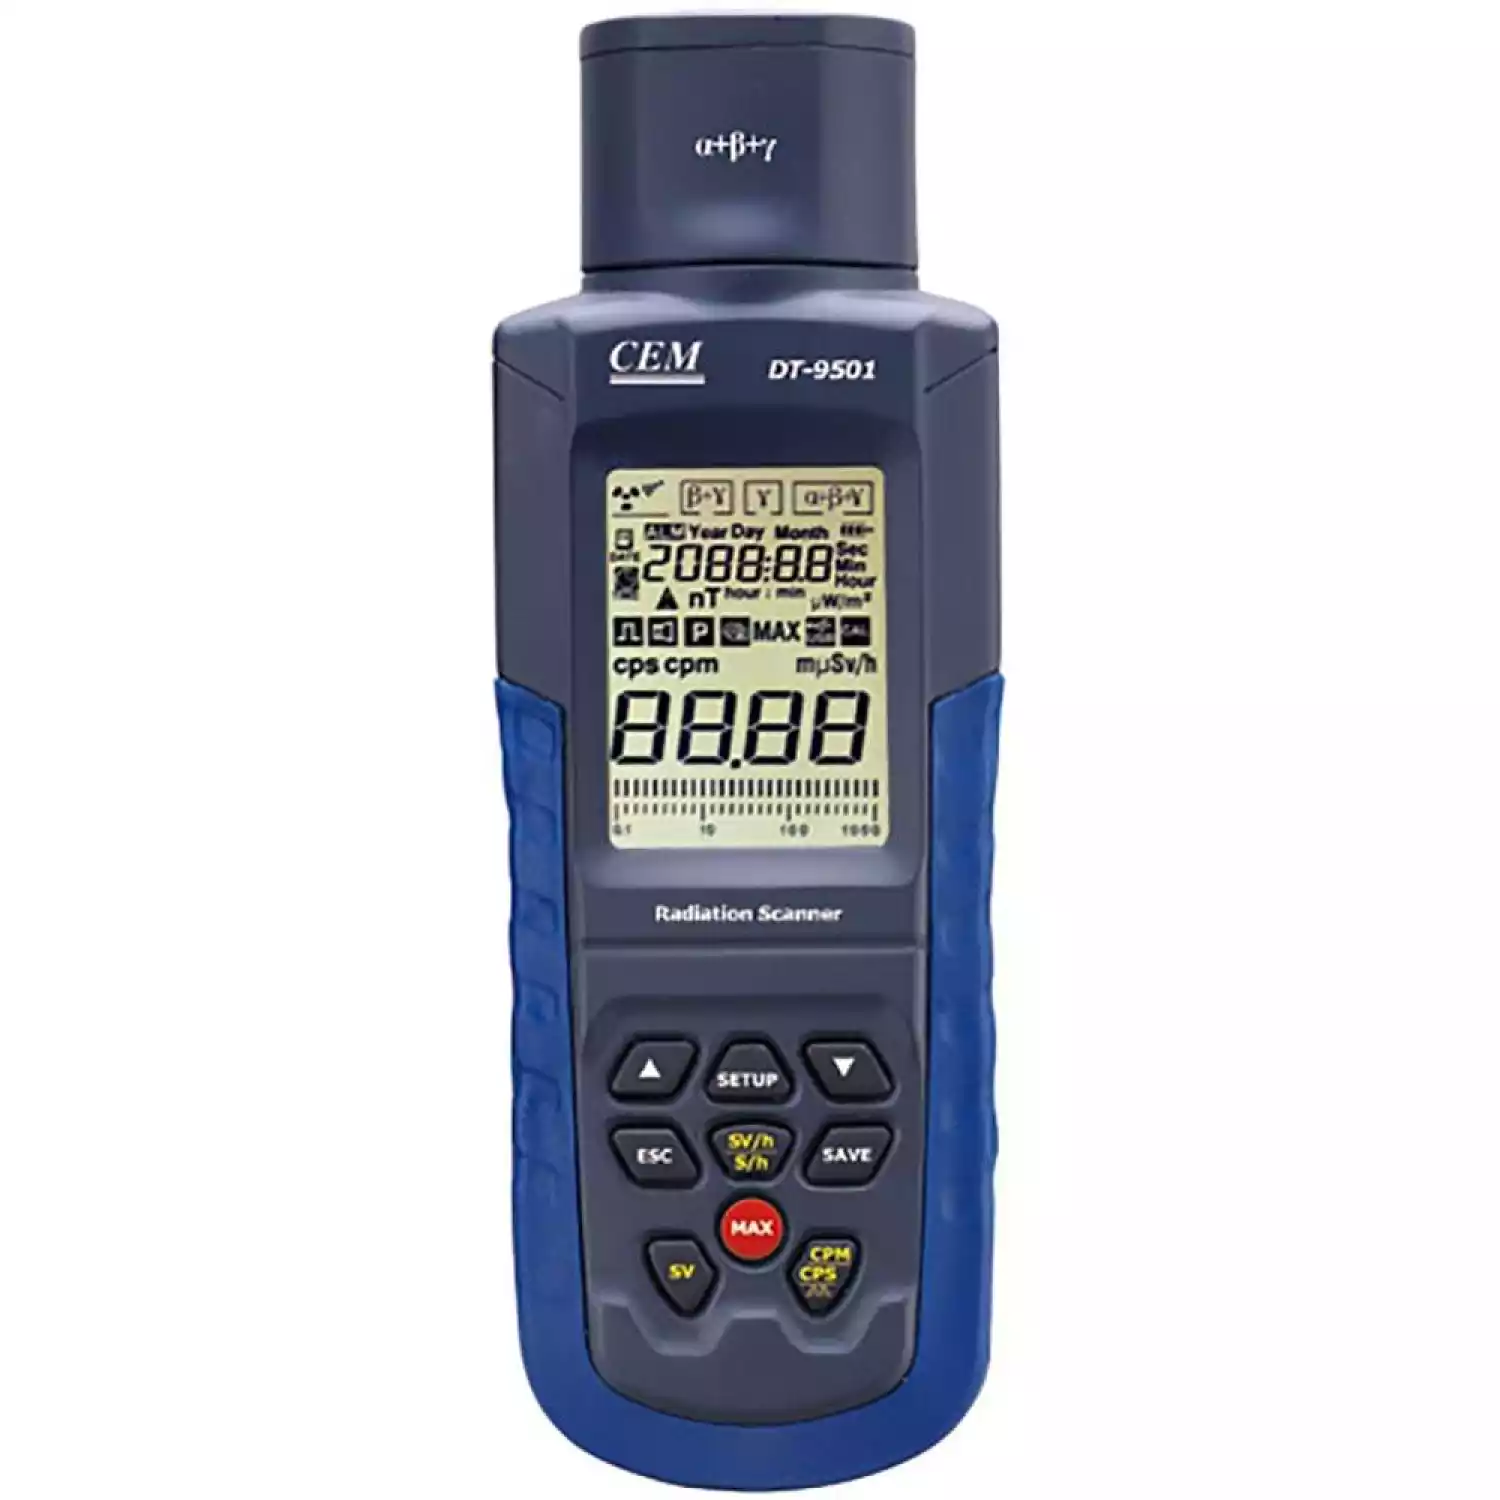 Дозиметр CEM DT-9501 сканер радиации - 1